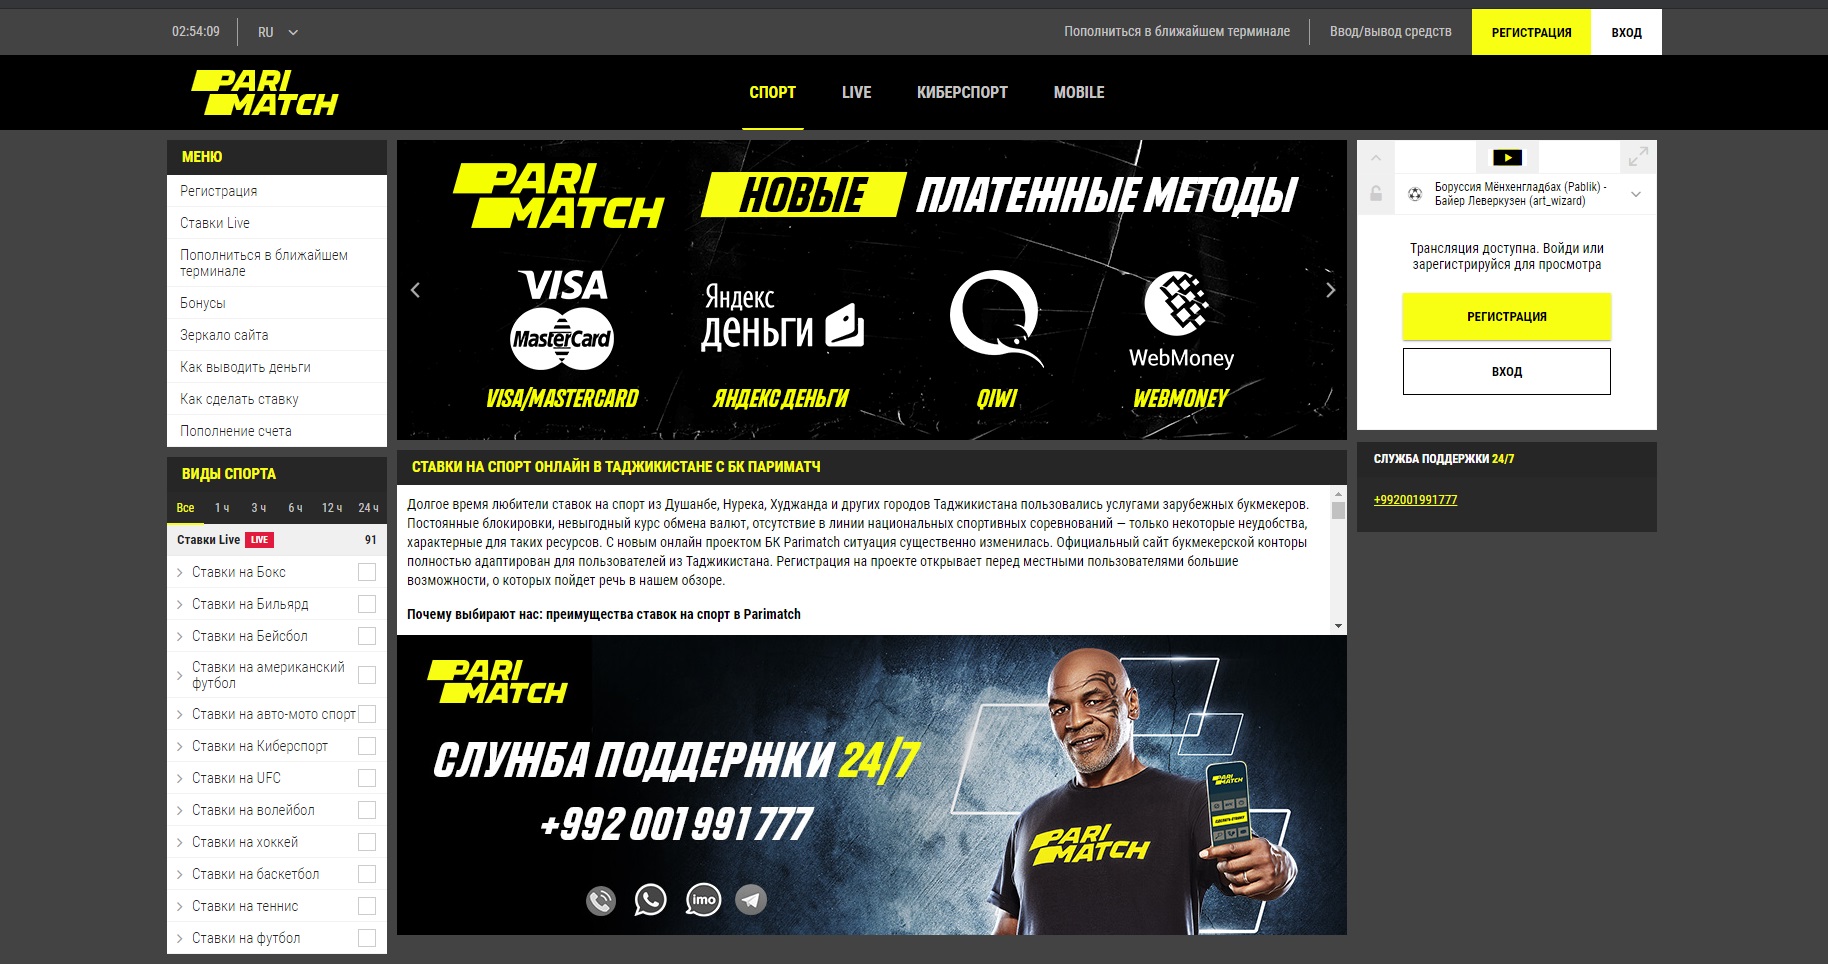 ставки на спорт официальный сайт на деньги скачать бесплатно на русском с официального